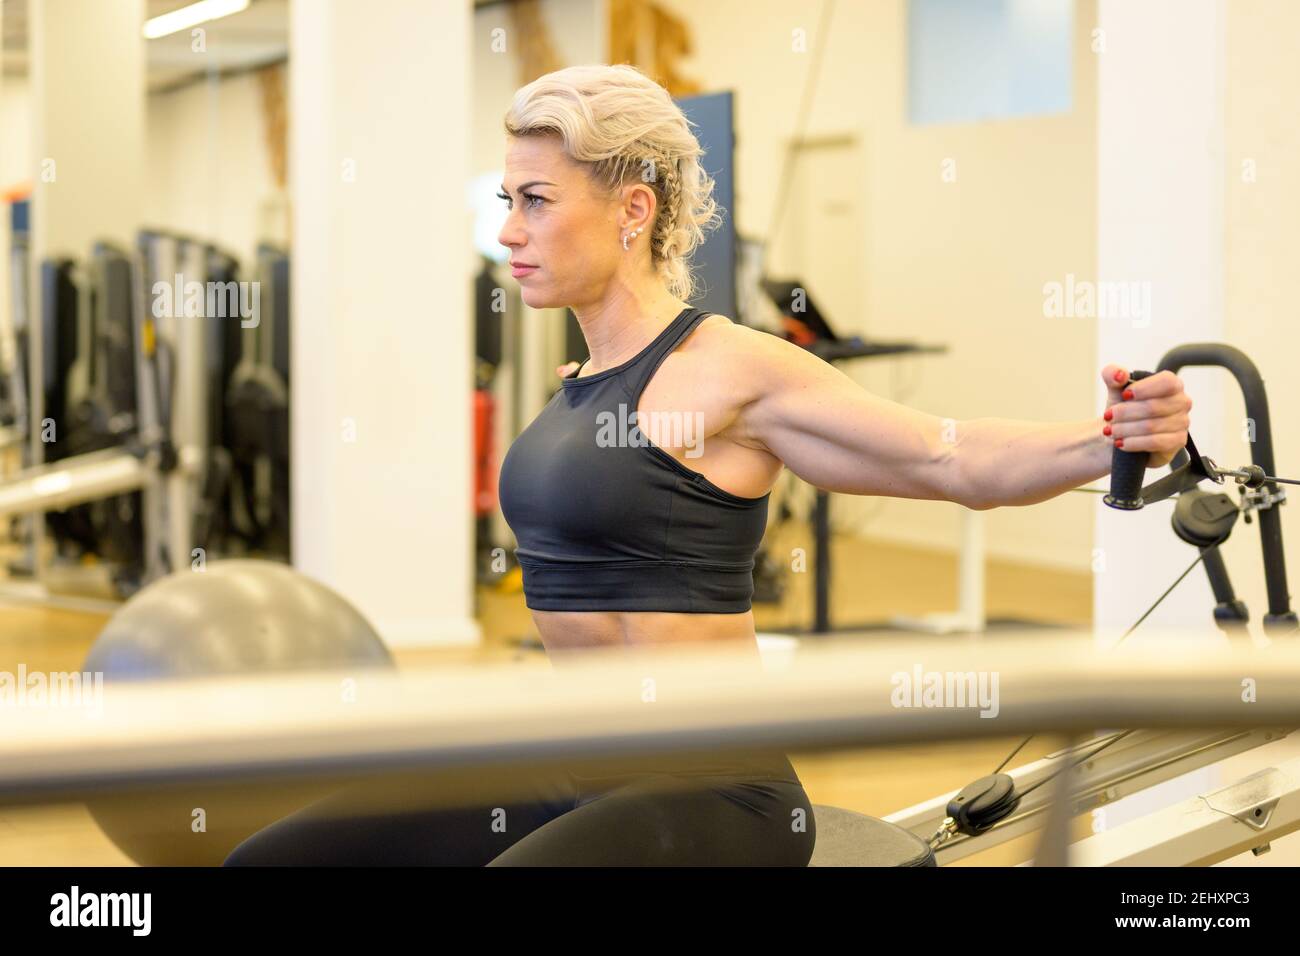 Sportliche Frau mittleren Alters, die an der Widerstandsausrüstung in einem arbeitet Gym Stärkung ihrer Arm und Oberkörper Kernmuskeln angesehen An anderen Geräten in vorbei Stockfoto